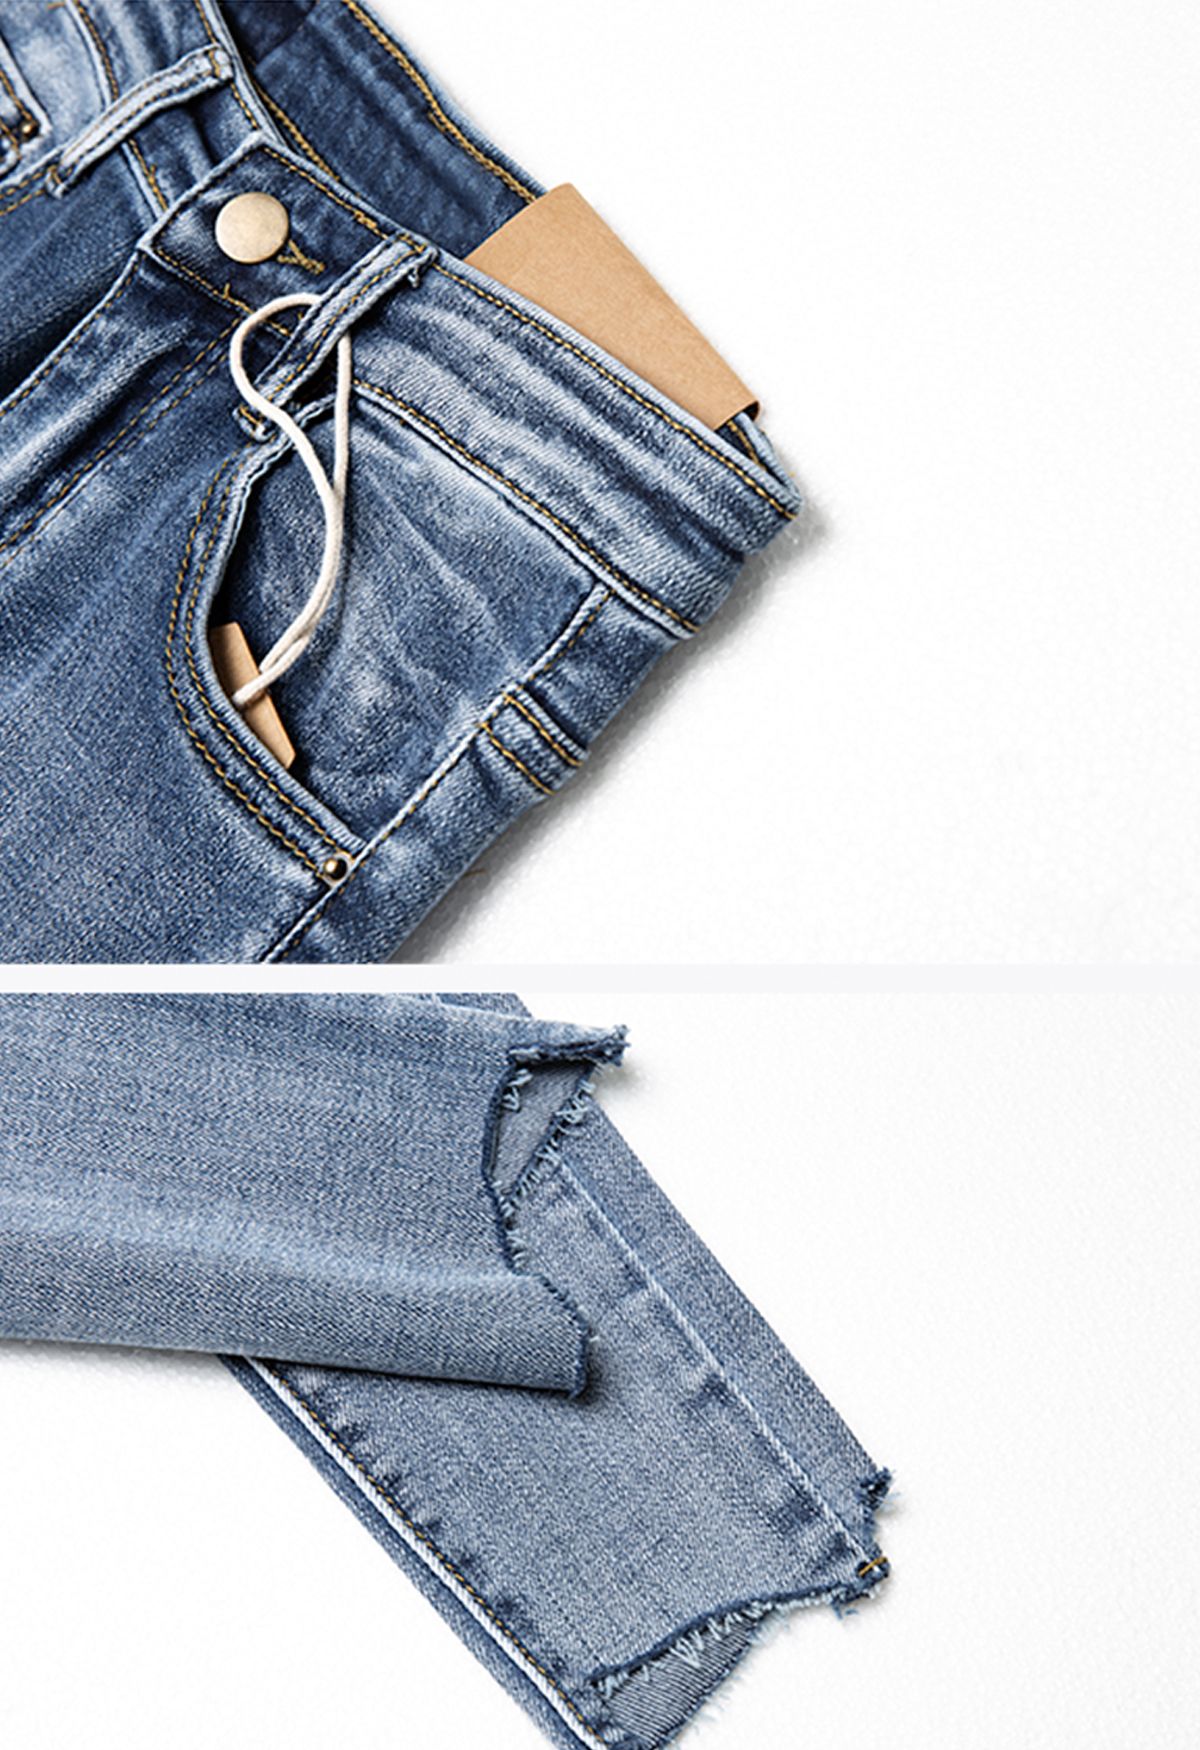 Jeans tobilleros desgastados con dobladillo sin rematar irregulares